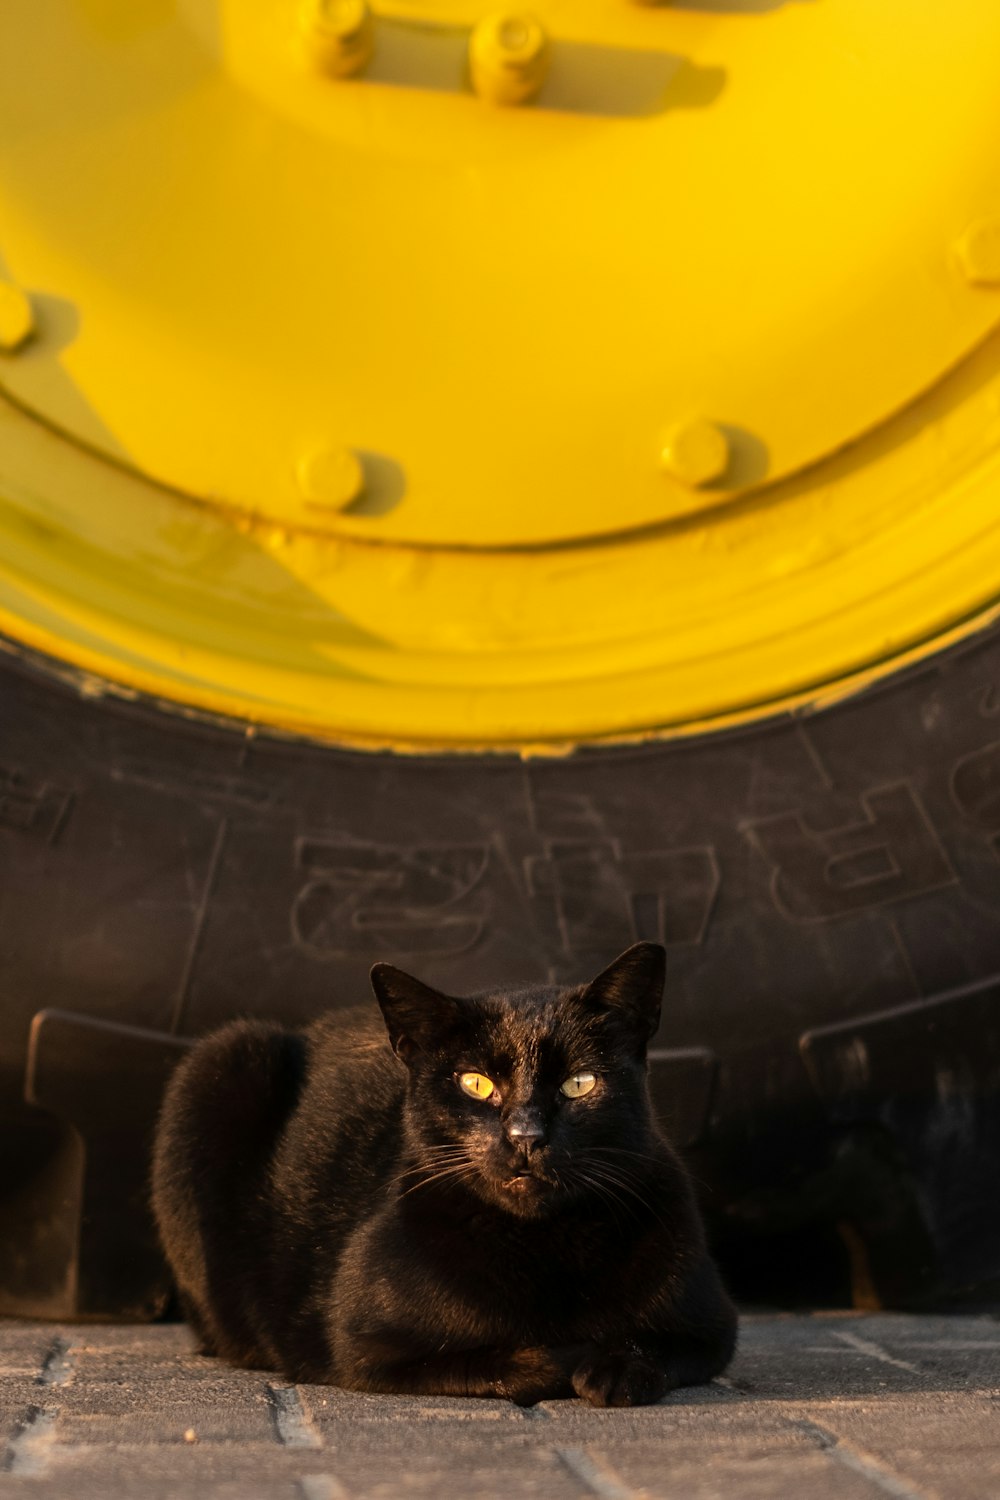 black cat in yellow plastic container